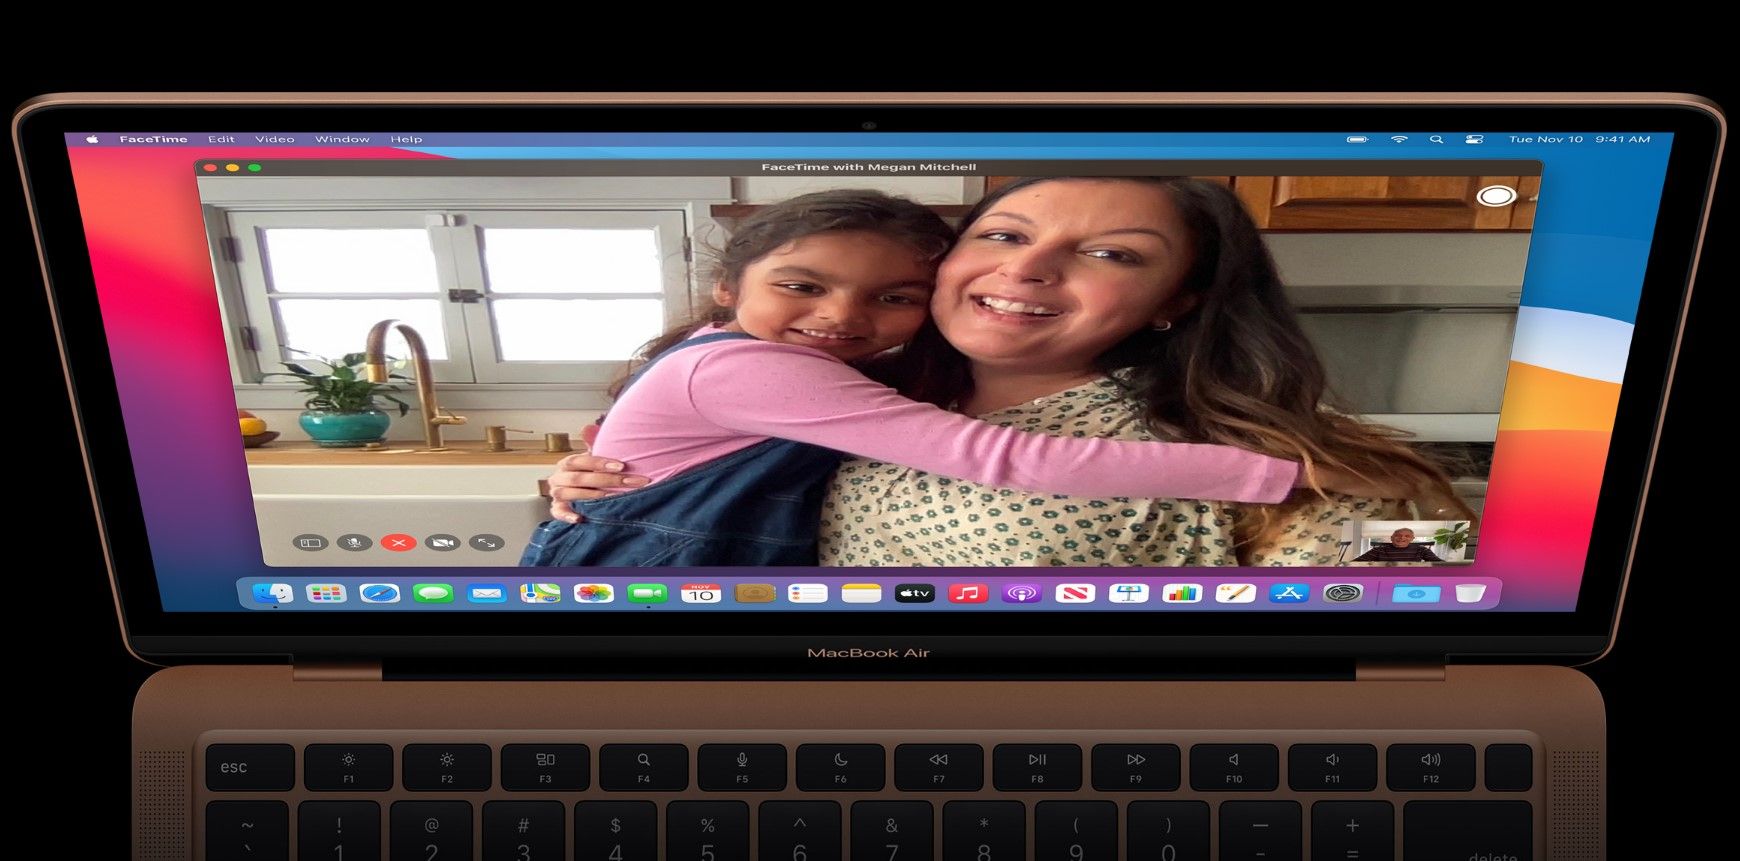 MacBook Air FaceTime camera